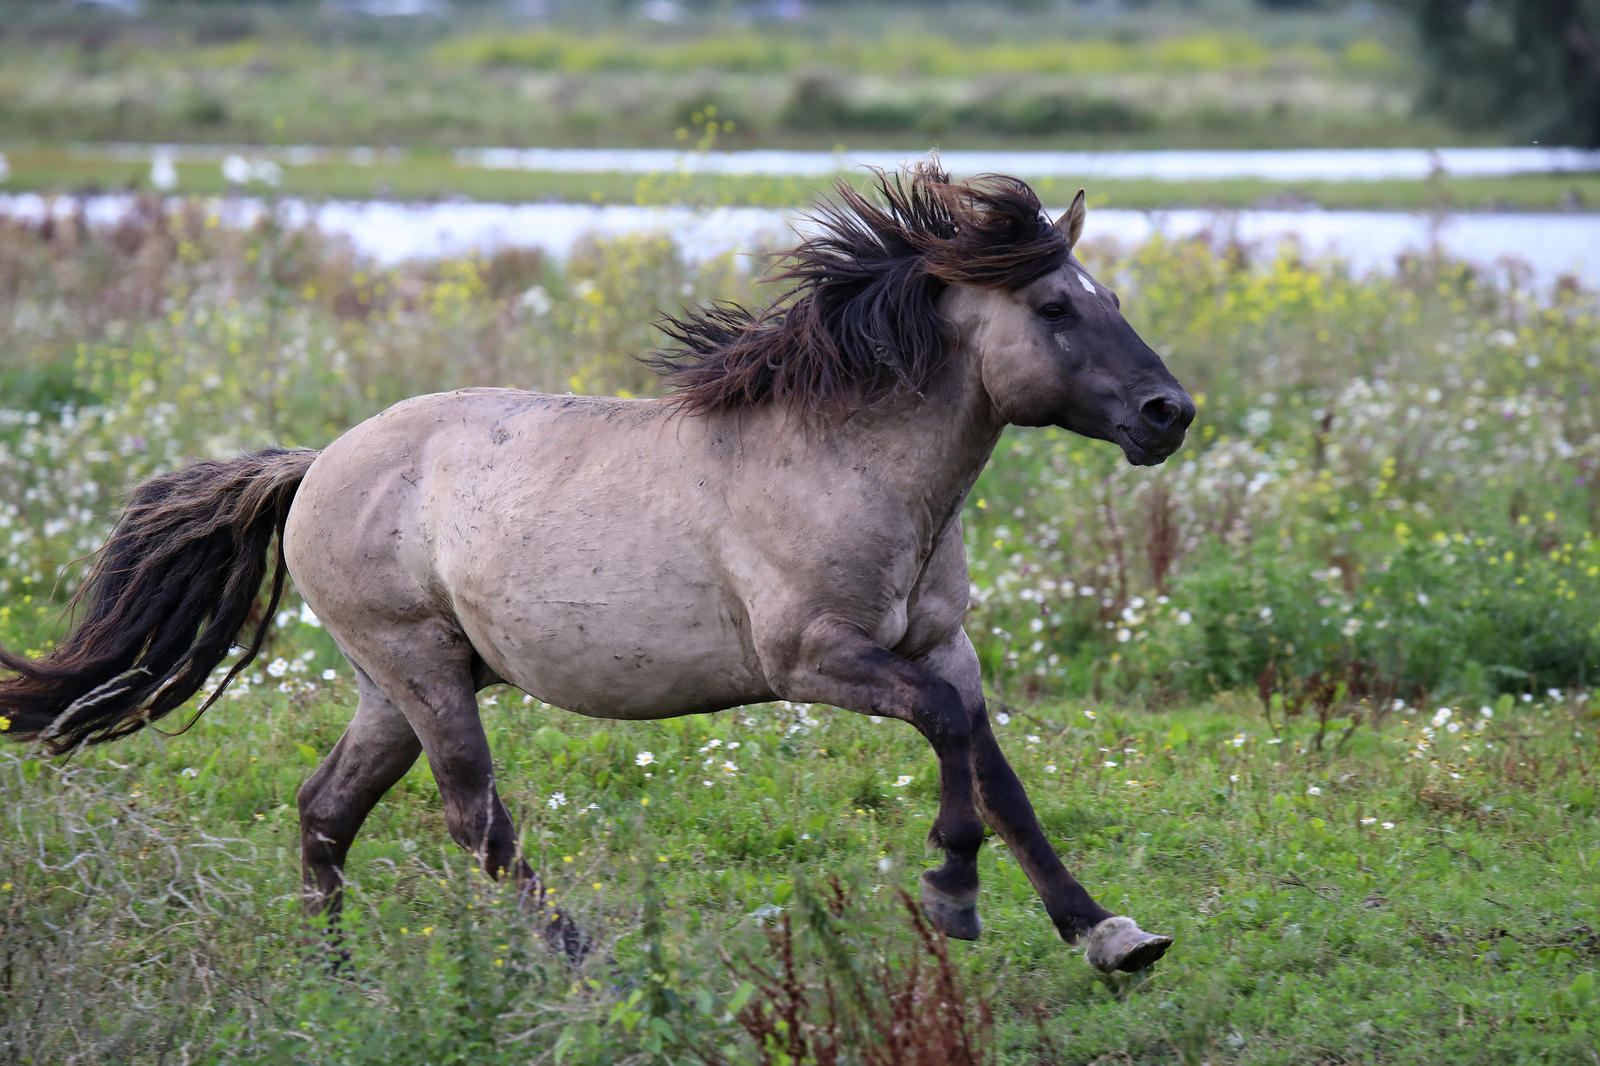 En Europa se ha visto más resilvestración de animales herbívoros en la que se utilizan caballos konik salvajes para cambiar grandes entornos ambientales. Foto: Jac. Janssen on Visualhunt.com / CC BY